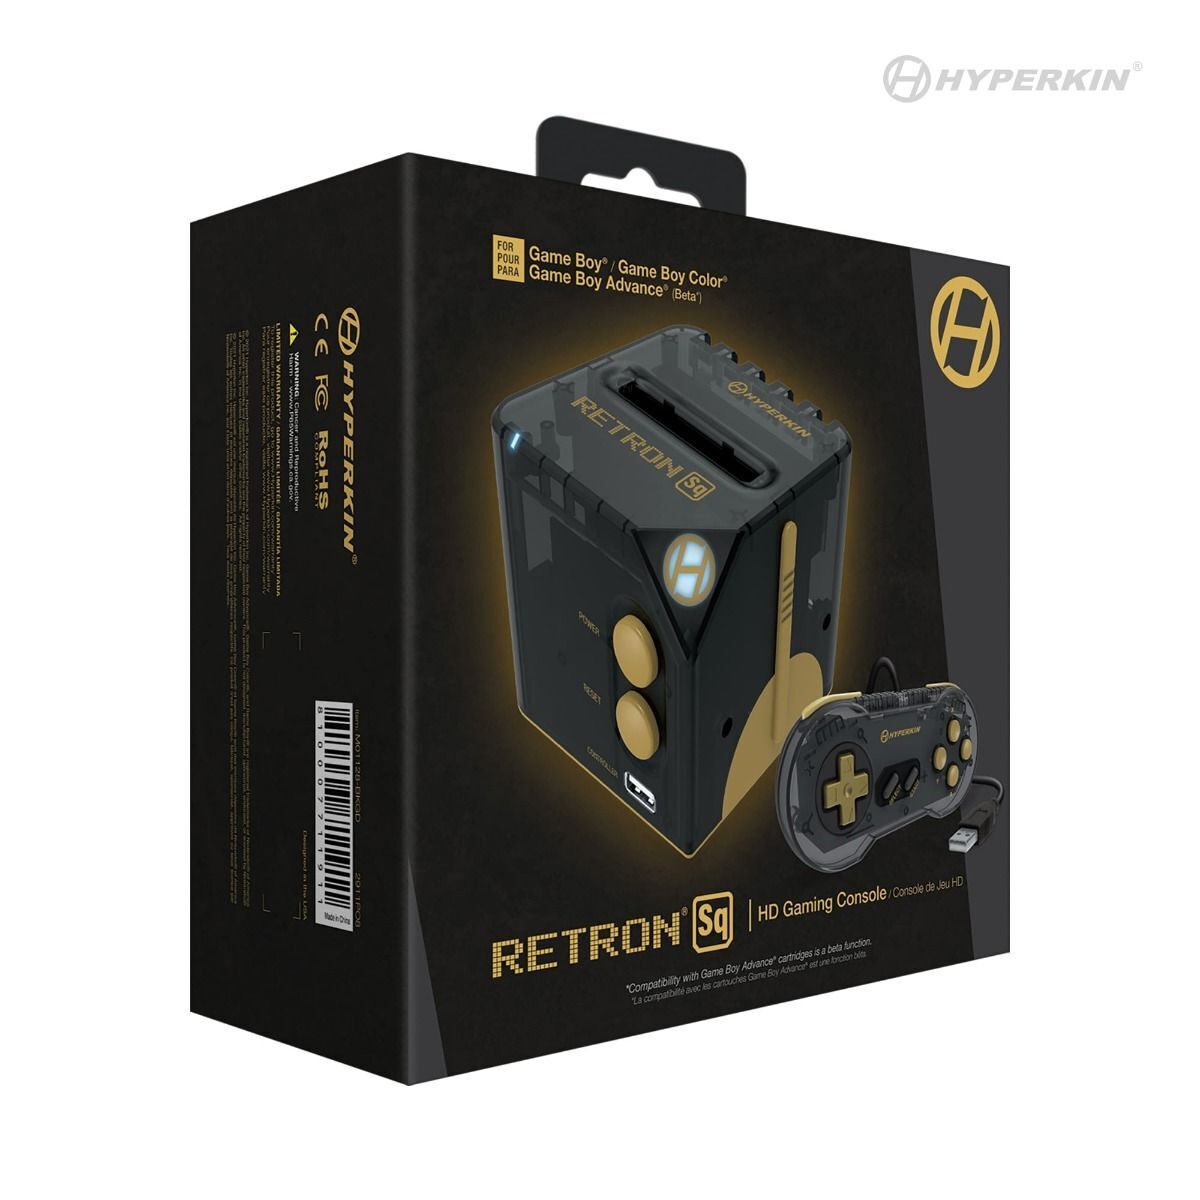 Hyperkin RetroN Sq • (Nintendo Game Boy / Advance / Color) Gaming Console